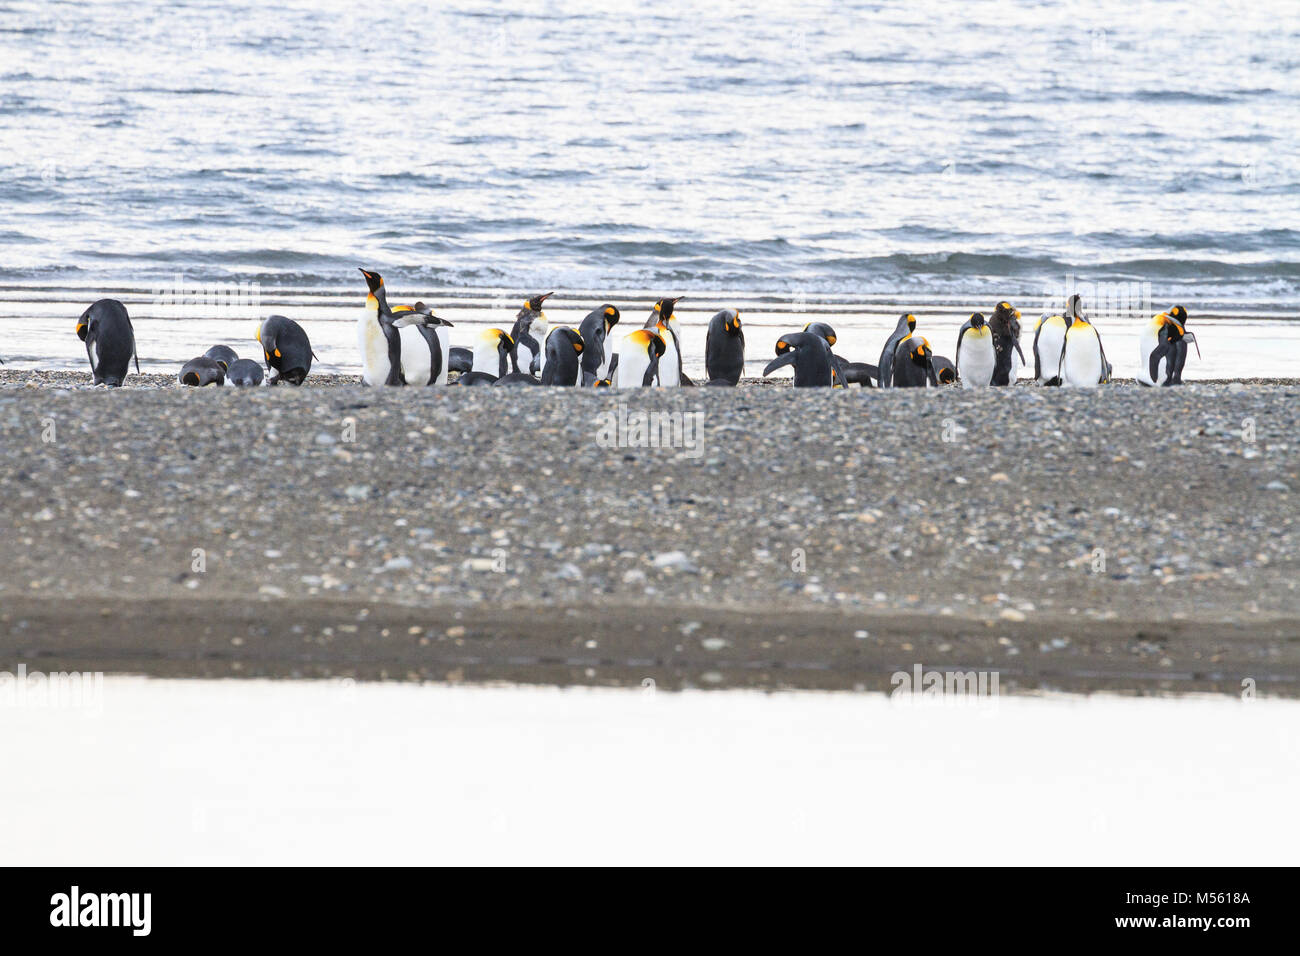 Una colonia de Pingüinos Rey (Aptenodytes patagonicus) descansando en la playa en el Parque Pinguino rey, Tierra del Fuego, Patagonia, Chile Foto de stock